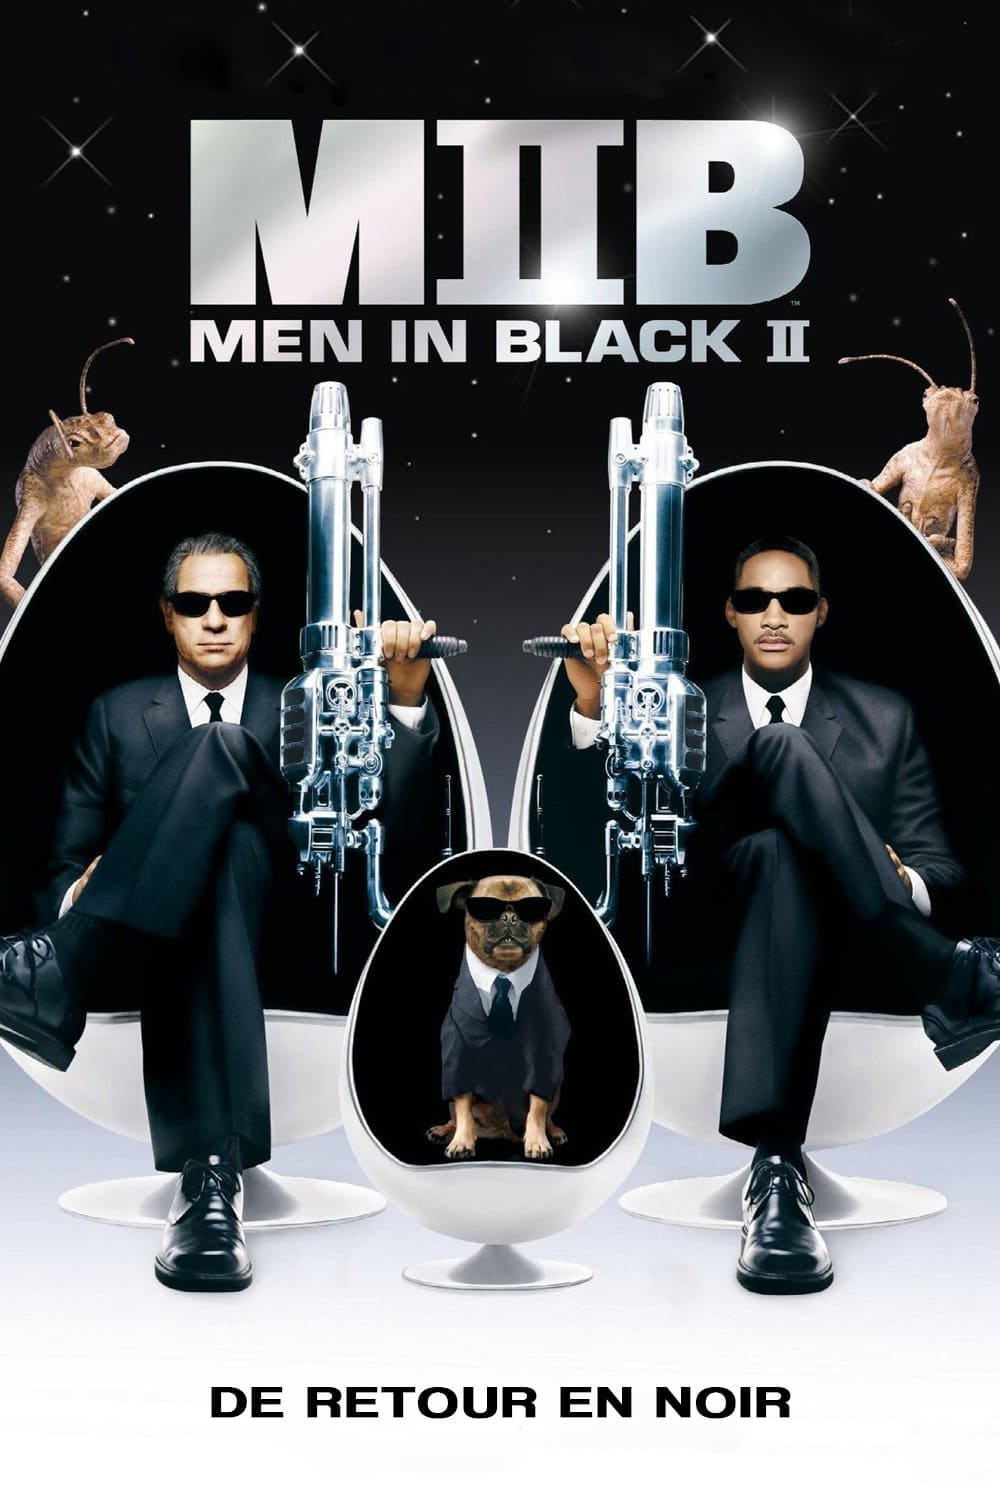 ดูหนังออนไลน์ฟรี ดูหนัง HD Men in Black 2 2002 เอ็มไอบี หน่วยจารชนพิทักษ์จักรวาล 2